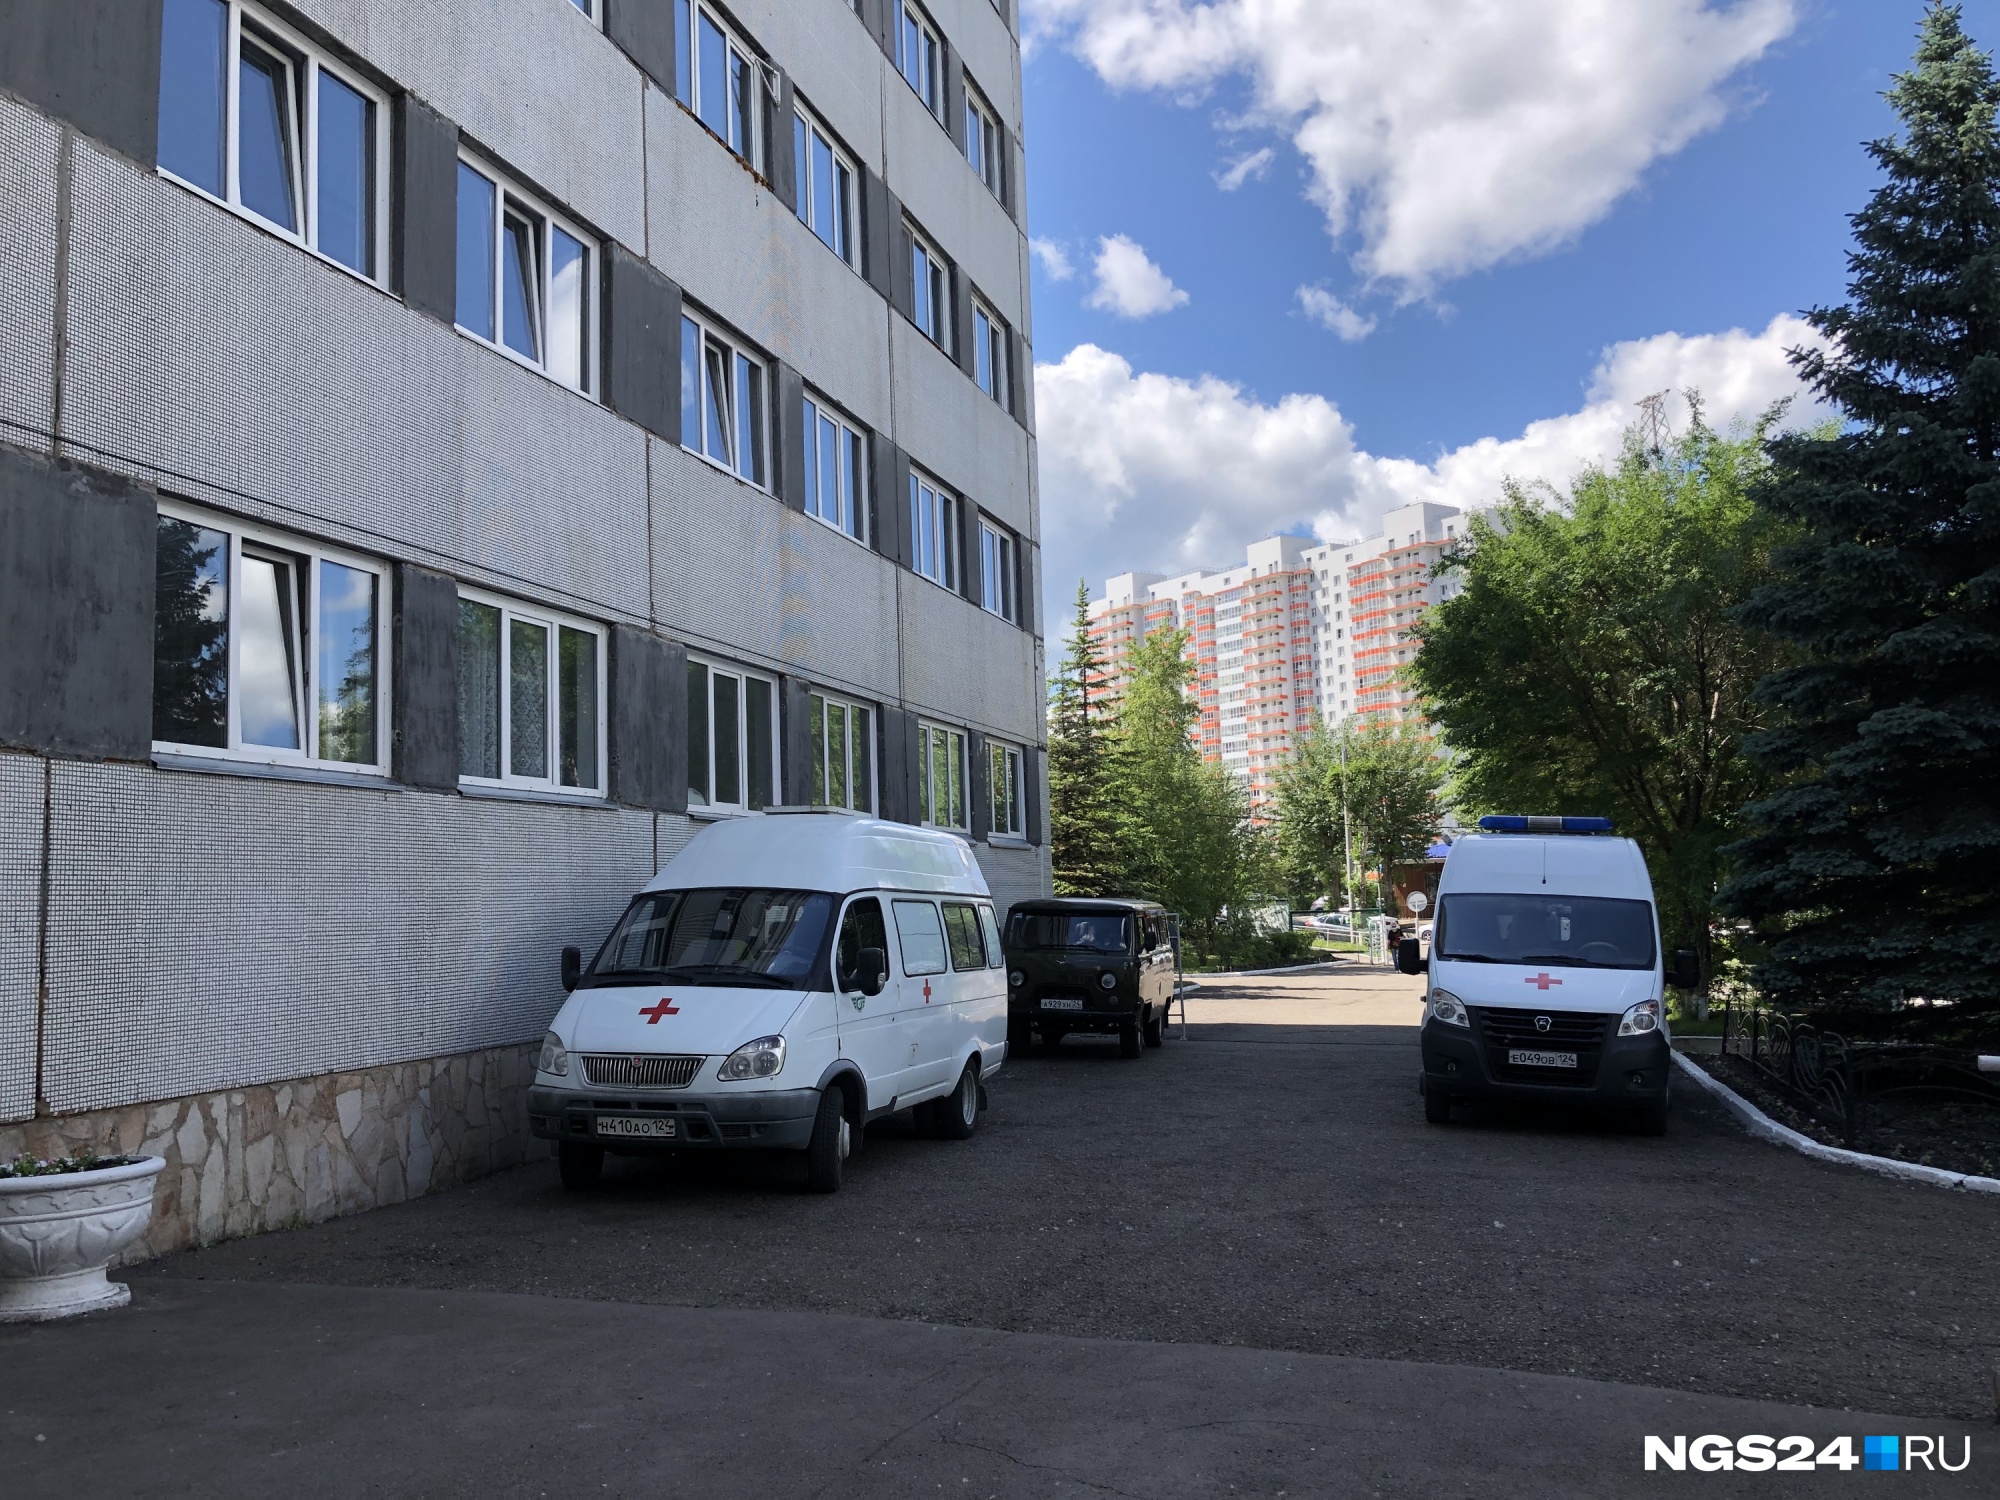 Больных COVID-19 со средней тяжестью из Красноярска начали класть в пригородные госпитали